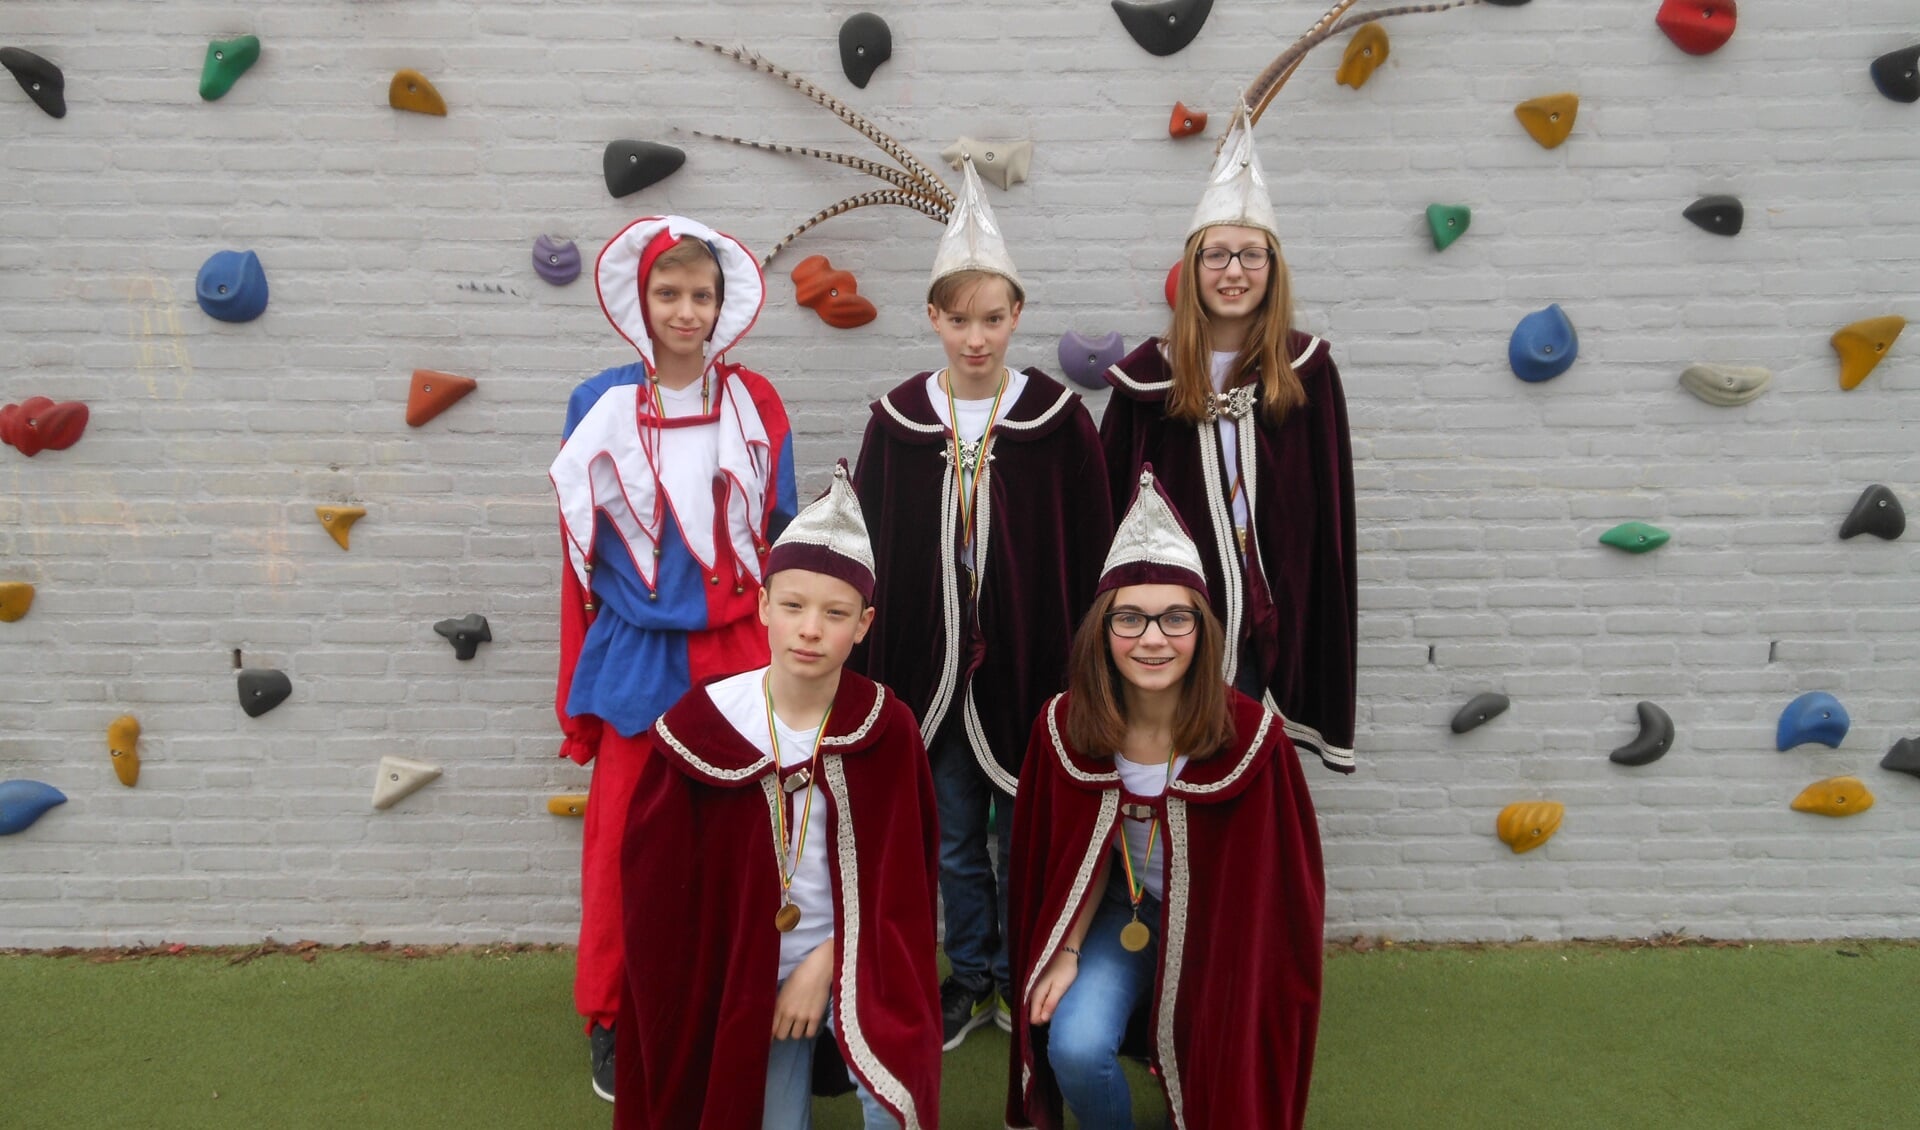 Dit vijftal gaat voorop tijdens de carnavalszitting  op basisschool Coninxhof in Venray. 